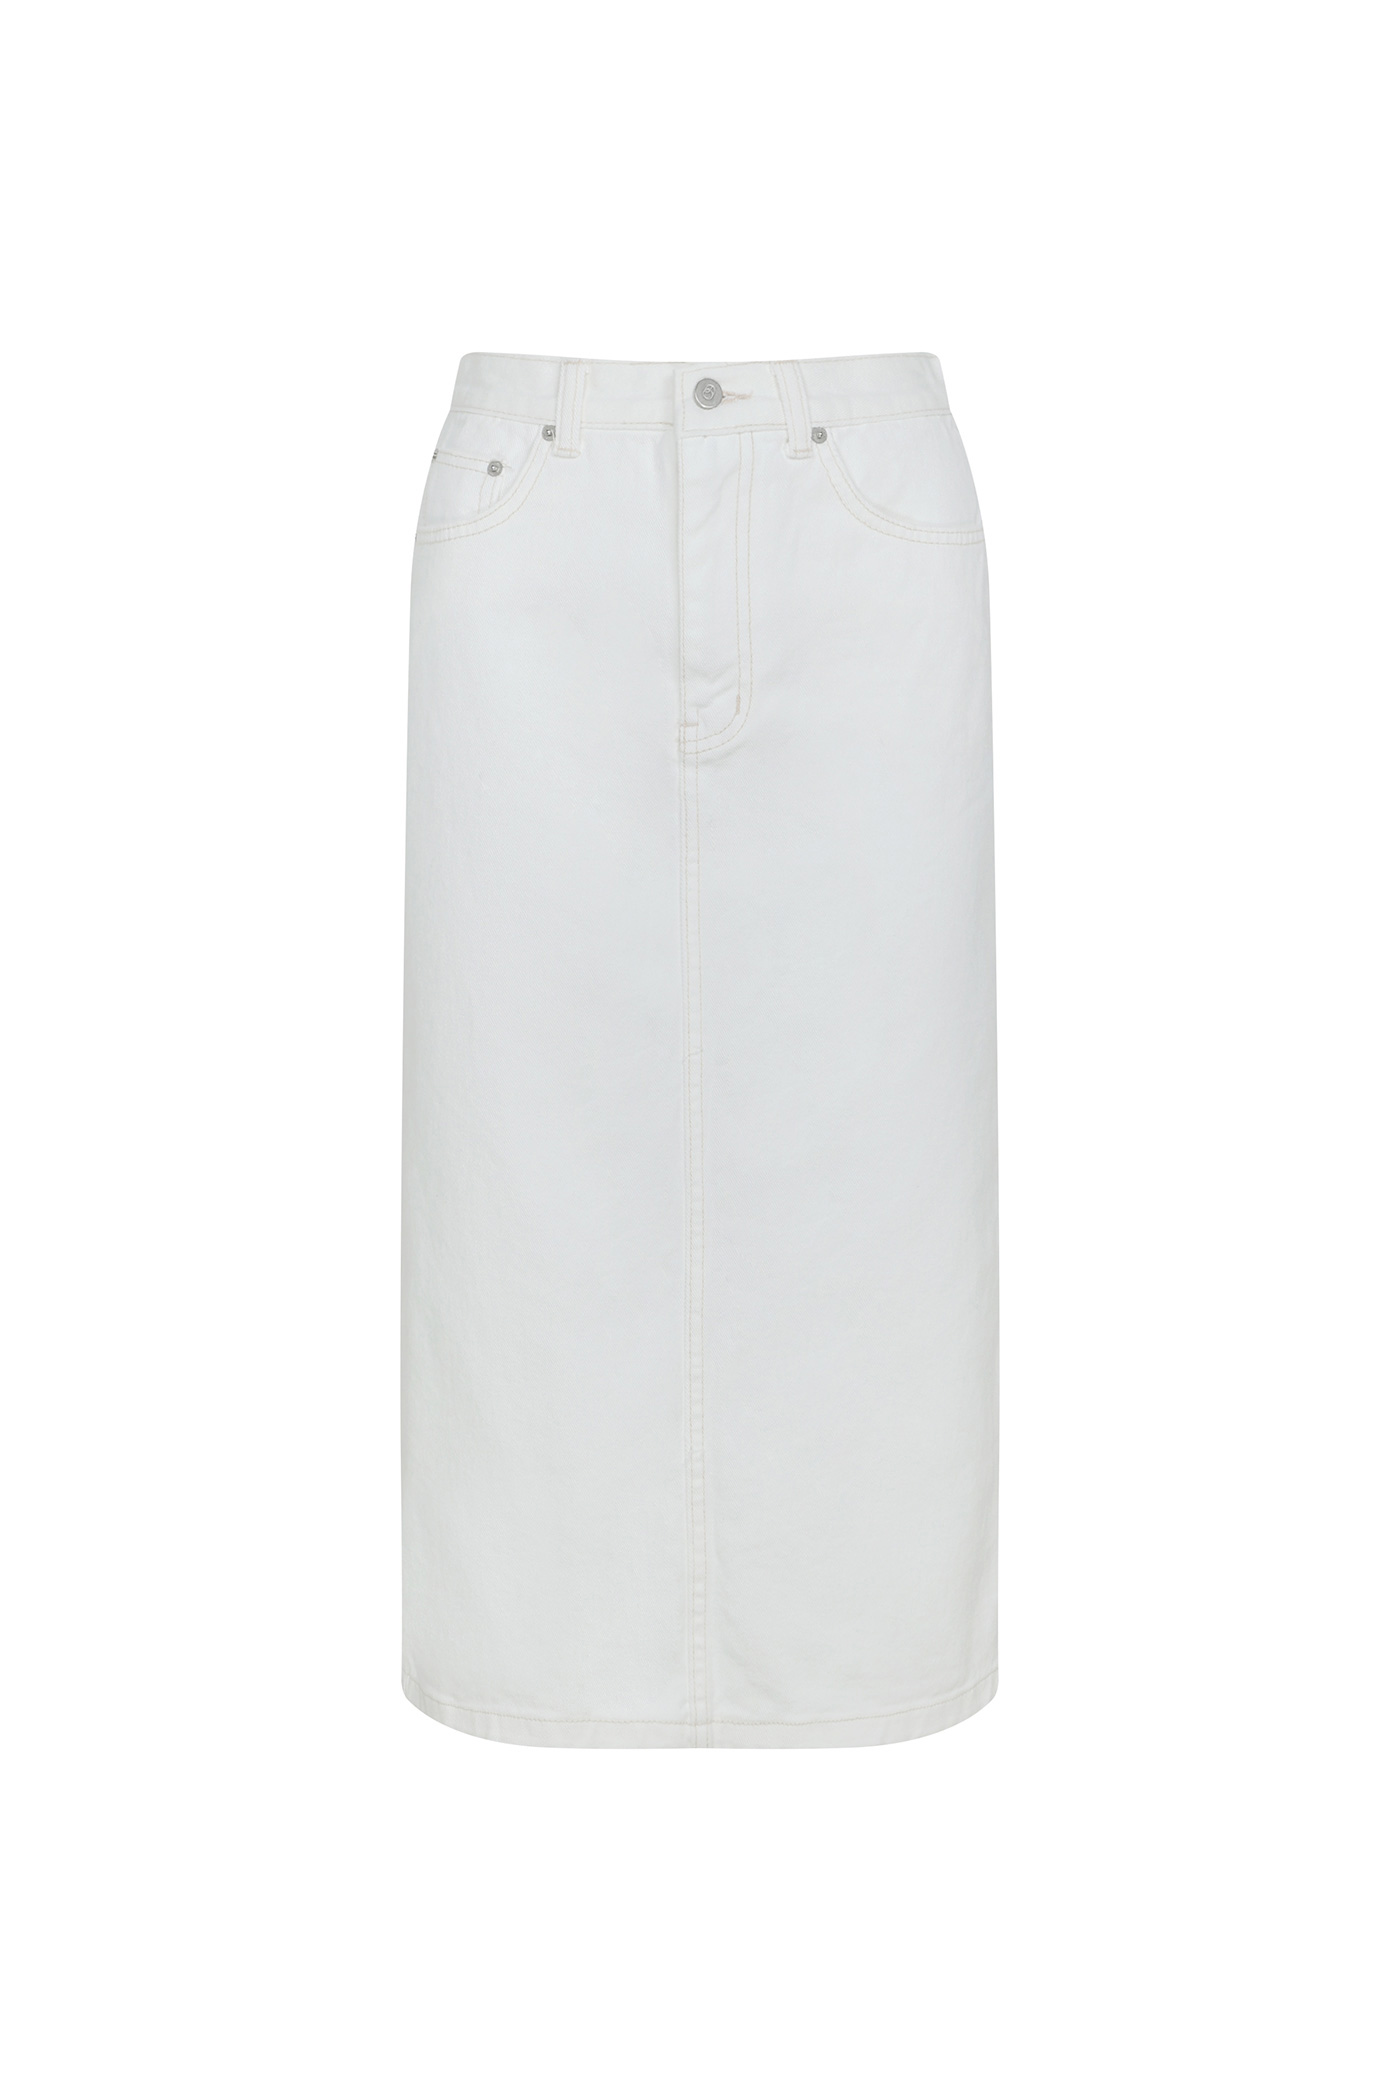 [SAMPLE]Ivory Denim H - Skirt[LMBBSSDN271]